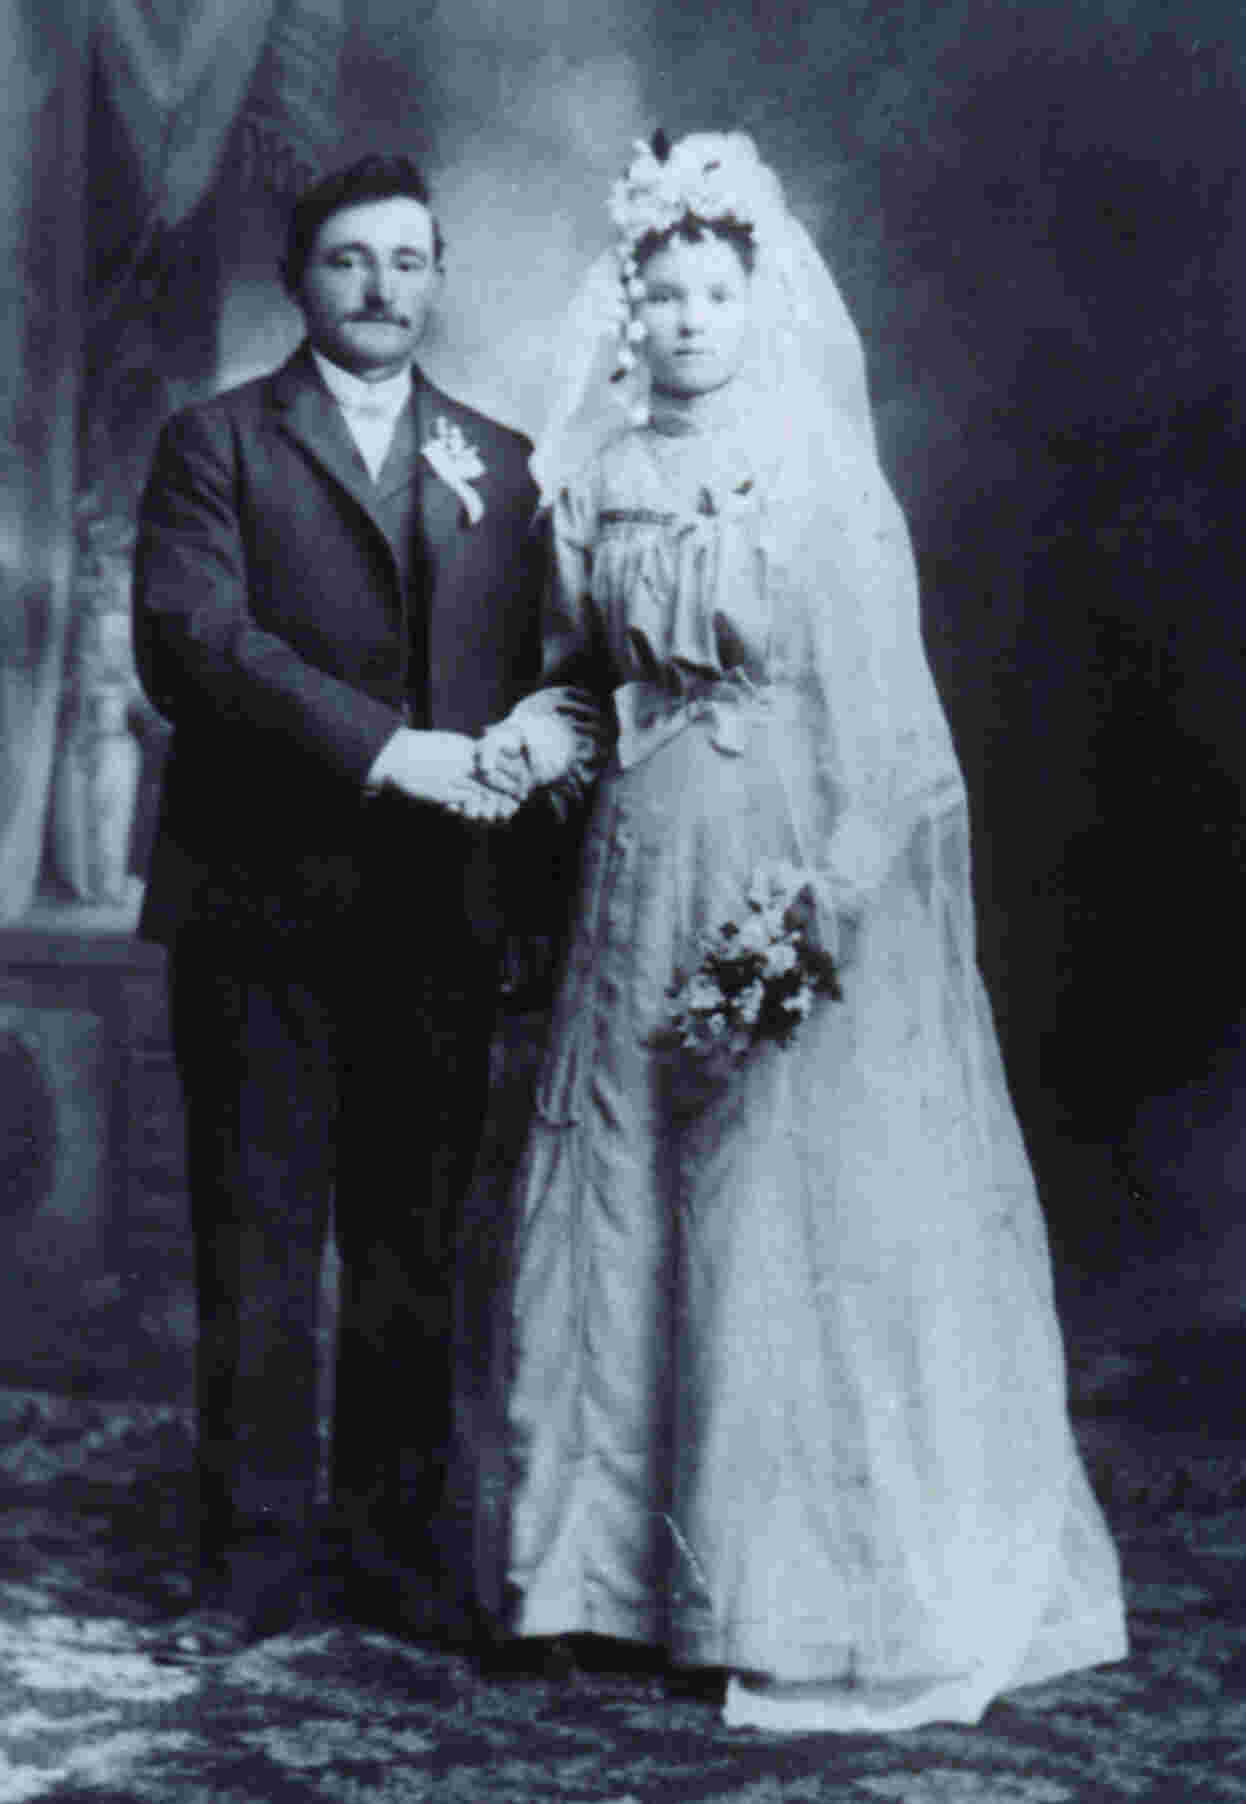 Hochzeit am 16.11.1905